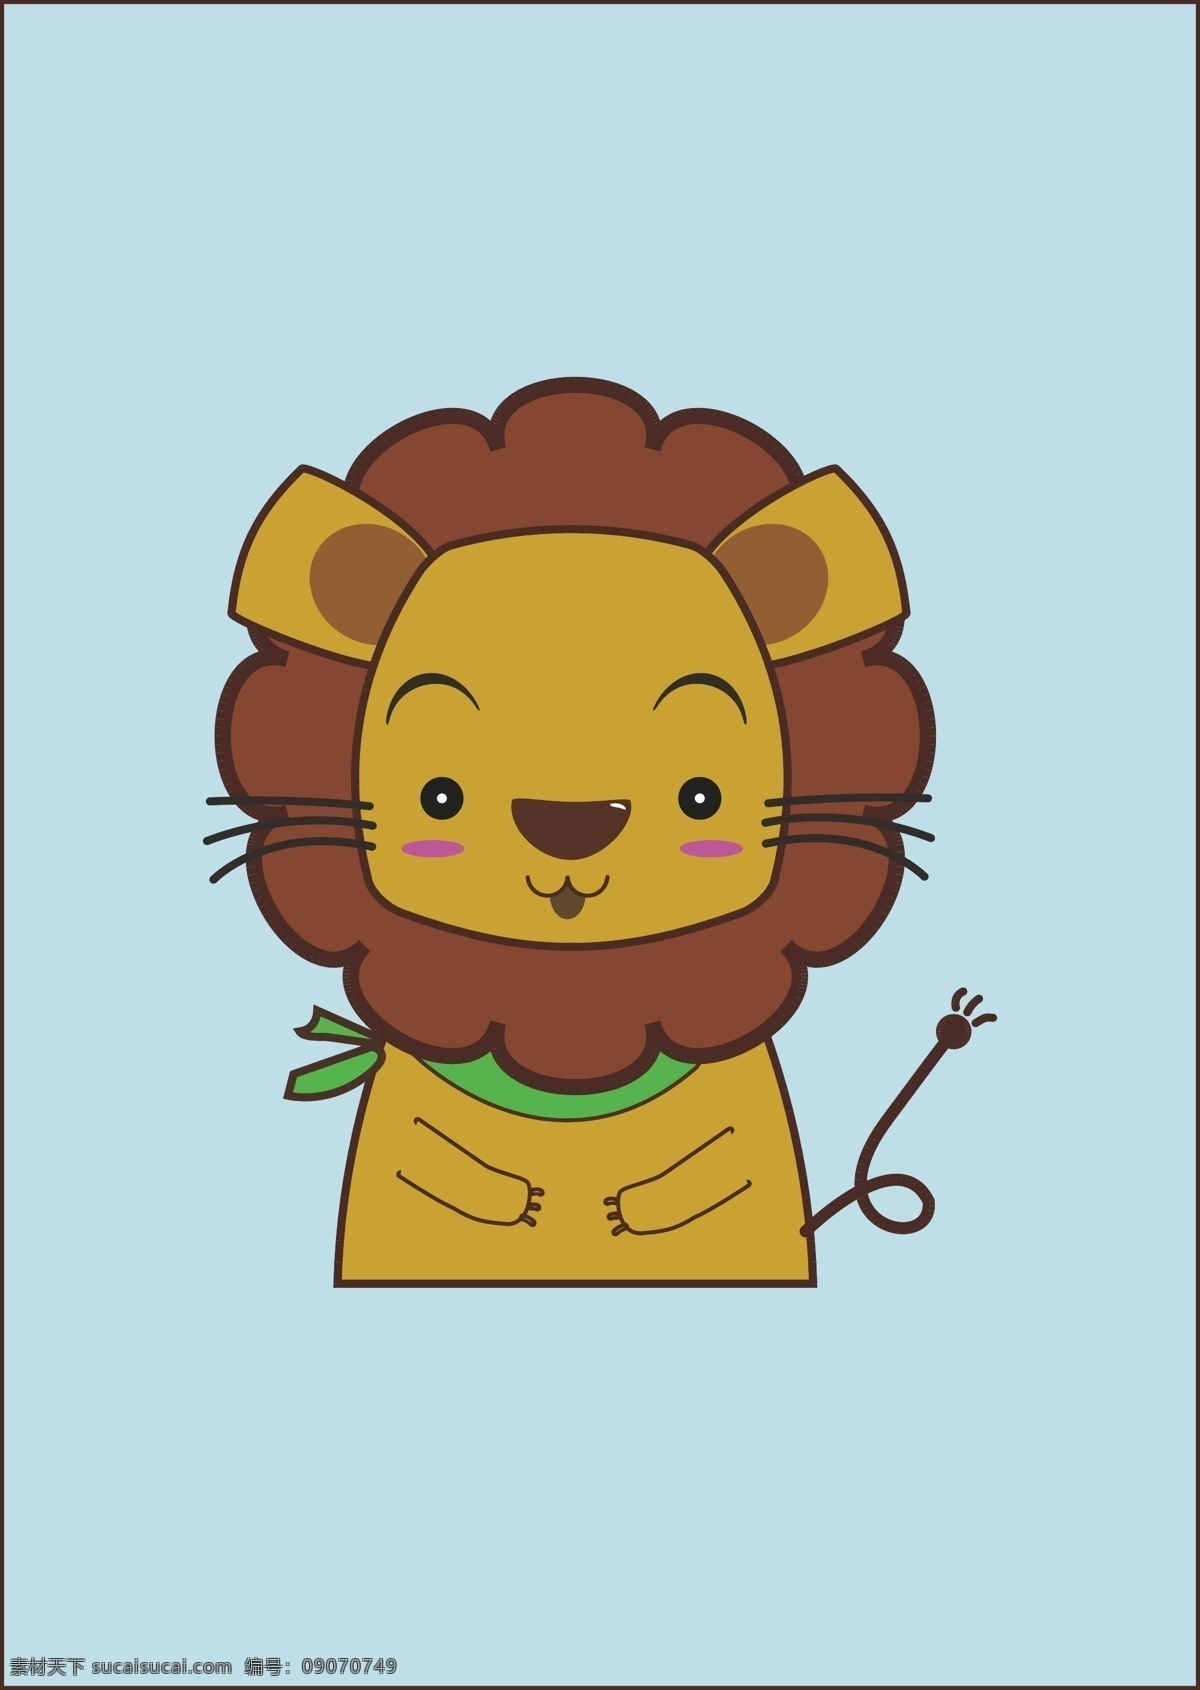 小狮子 卡通 动物 矢量分层 lion 生物世界 野生动物